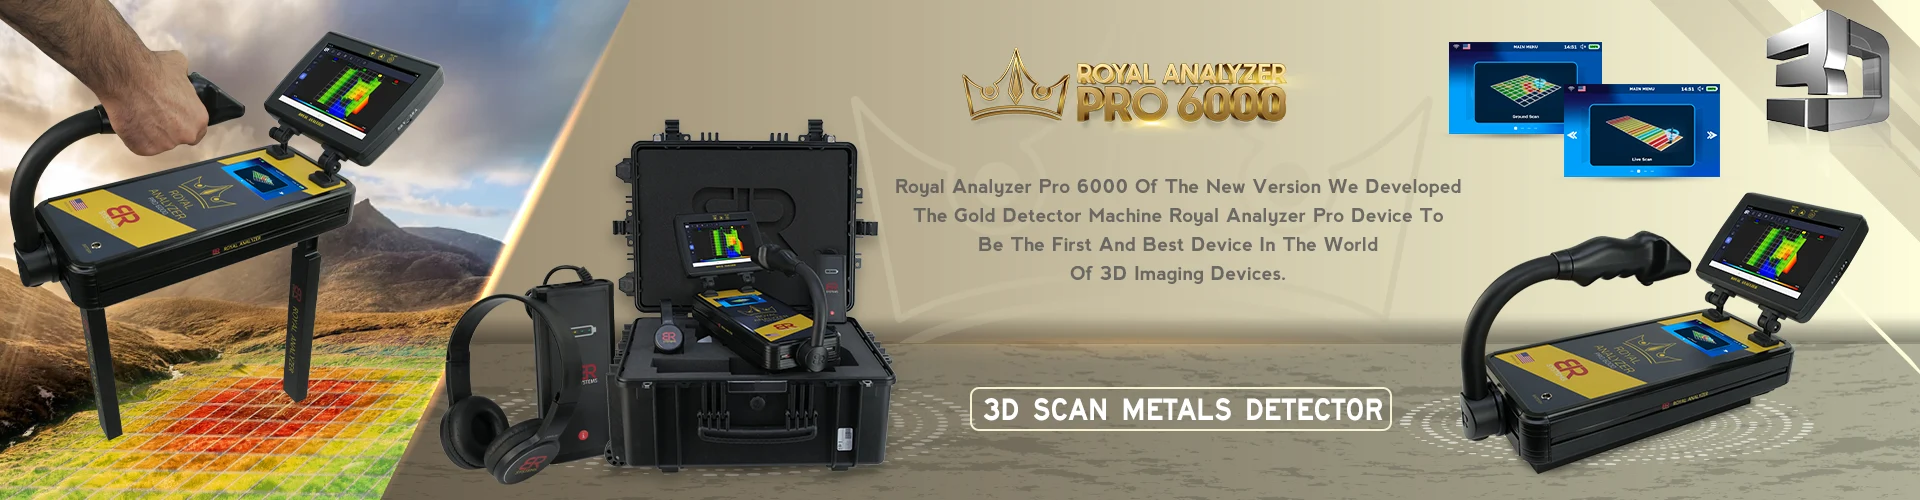 رويال انالايزر برو 6000 - جهاز كشف الذهب ثلاثي الابعاد